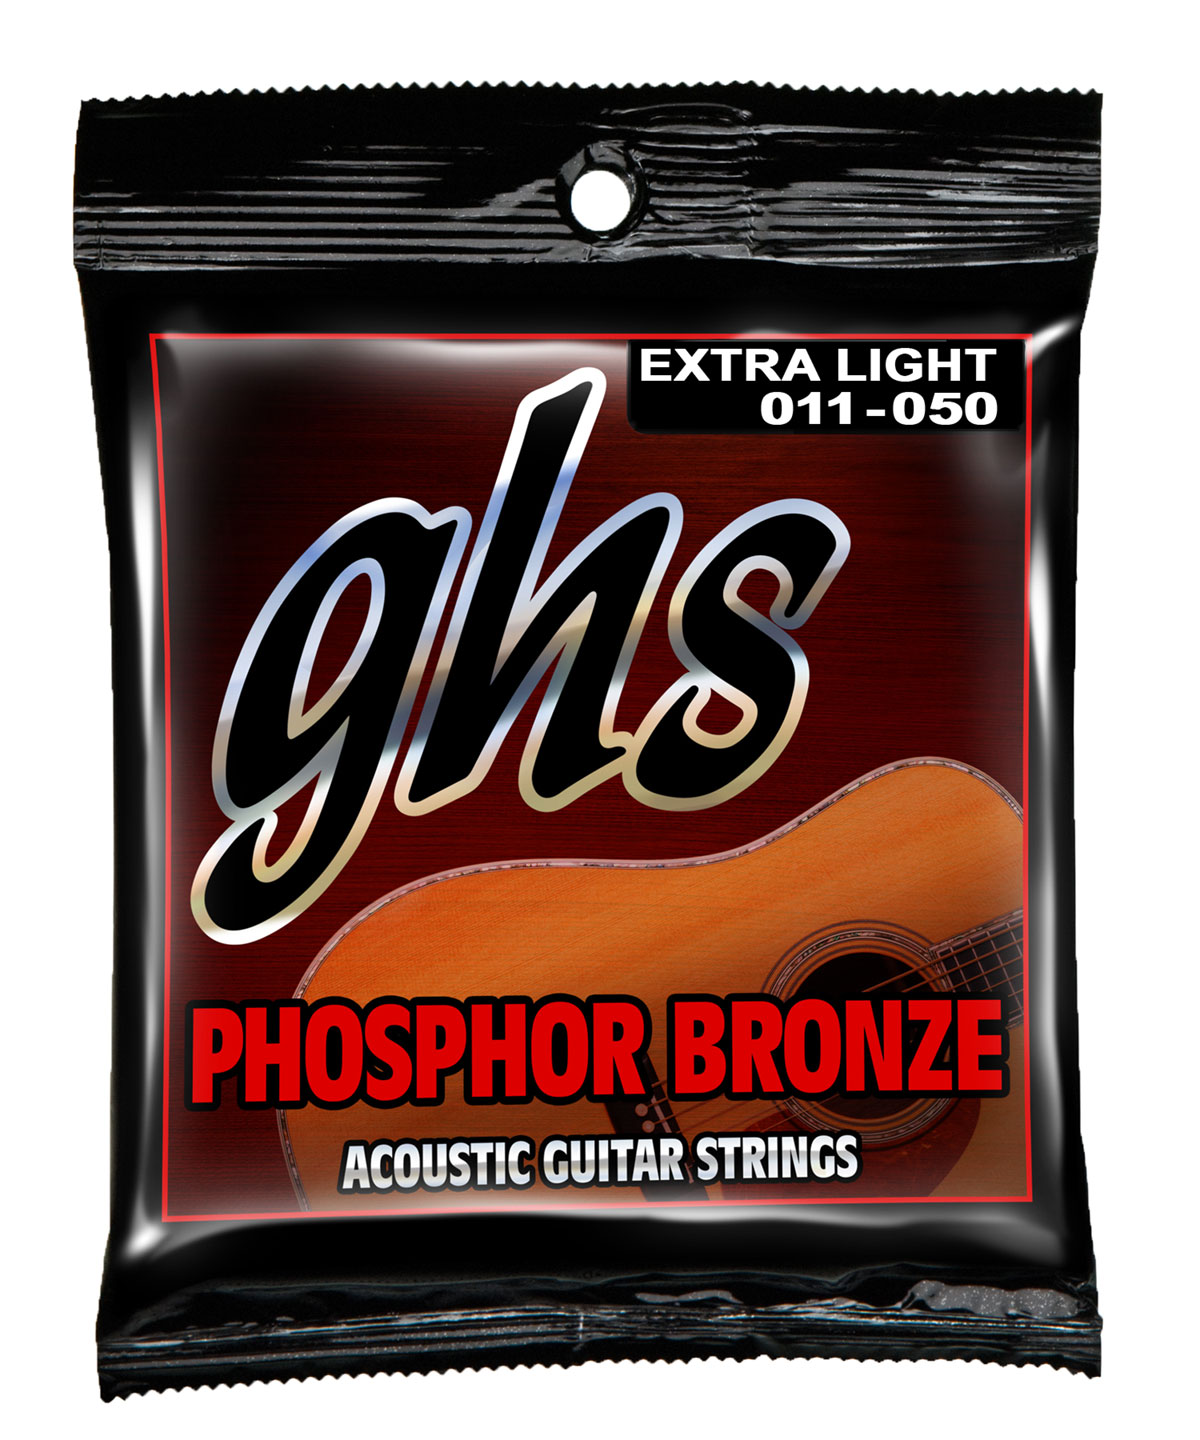 GHS Phosphor Bronze - S315 - Acoustic Guitar String Set, Extra Light, .011-.050